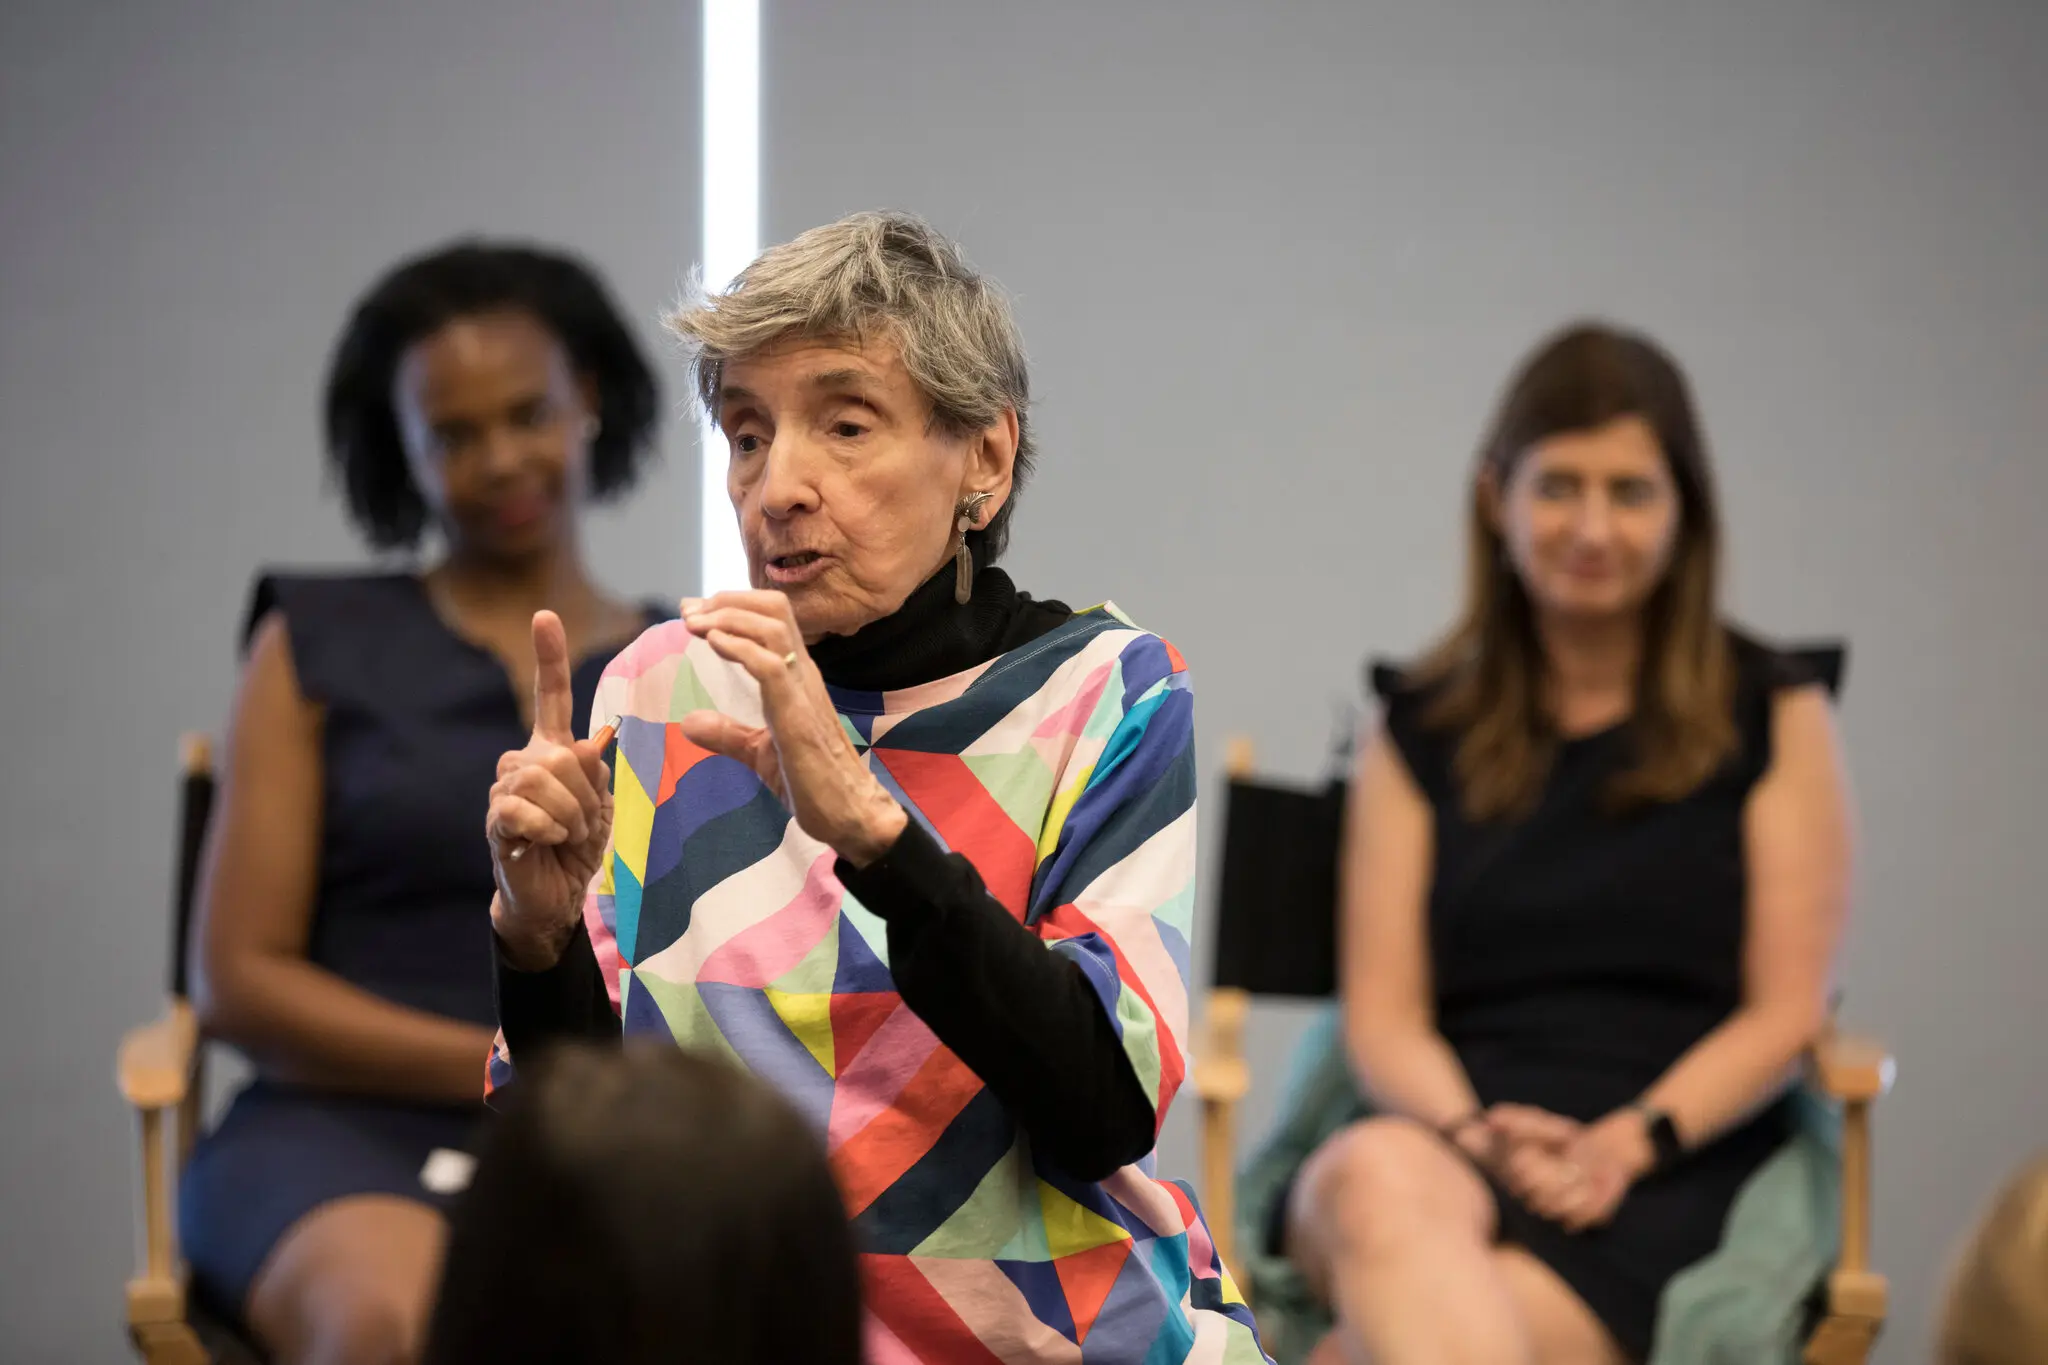 Sra. Wade em 2018 falando para a Women's Network, um grupo de funcionários do The Times. Embora tenha se aposentado em 2001, ela permaneceu ativa como professora de jornalismo e políticas públicas. (Crédito da fotografia: James Estrin/The New York Times)